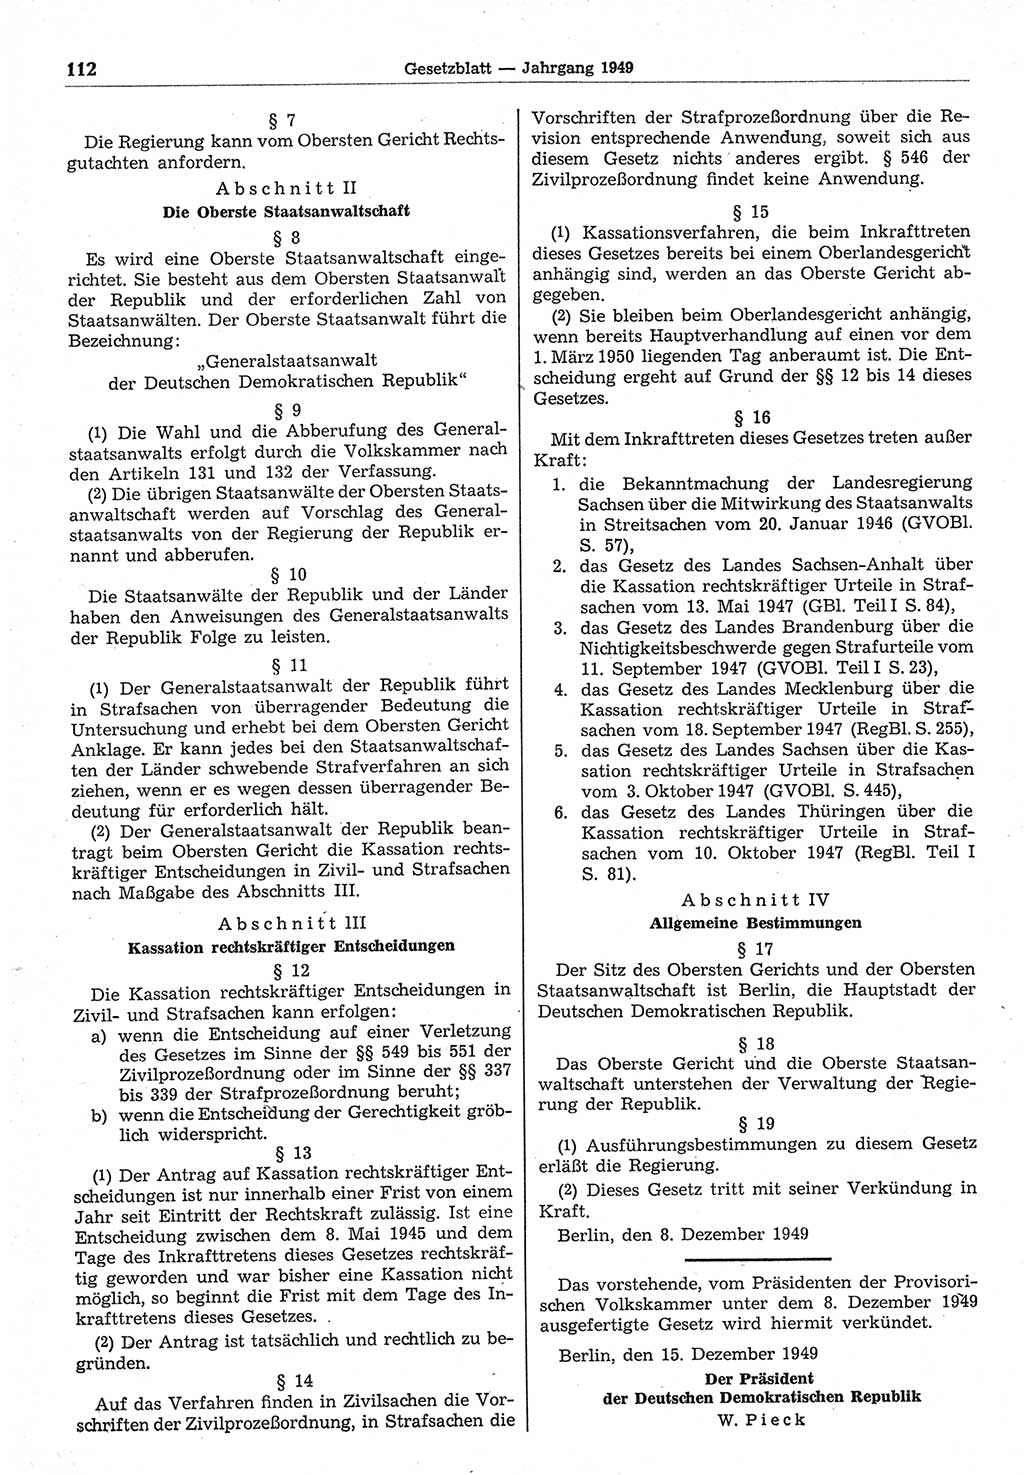 Gesetzblatt (GBl.) der Deutschen Demokratischen Republik (DDR) 1949, Seite 112 (GBl. DDR 1949, S. 112)